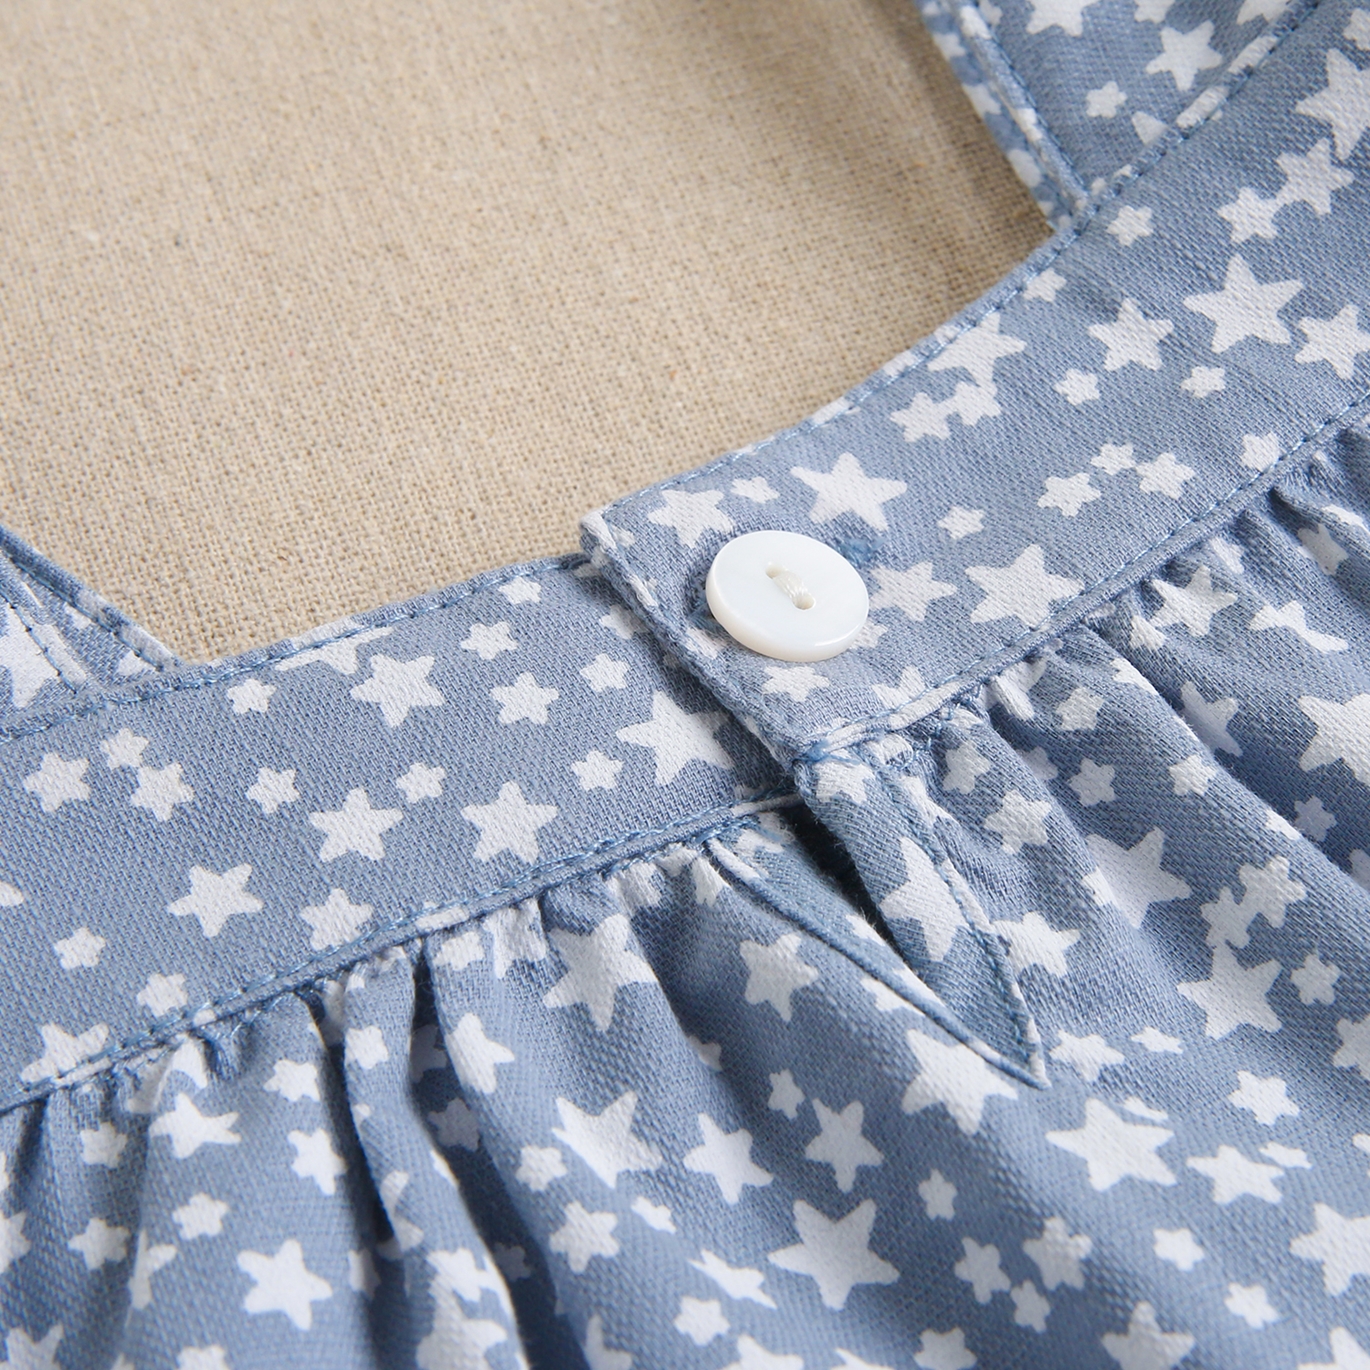 Imagen de Vestido de bebé niña con cubrepañal azul grisáceo con estrellas blancas